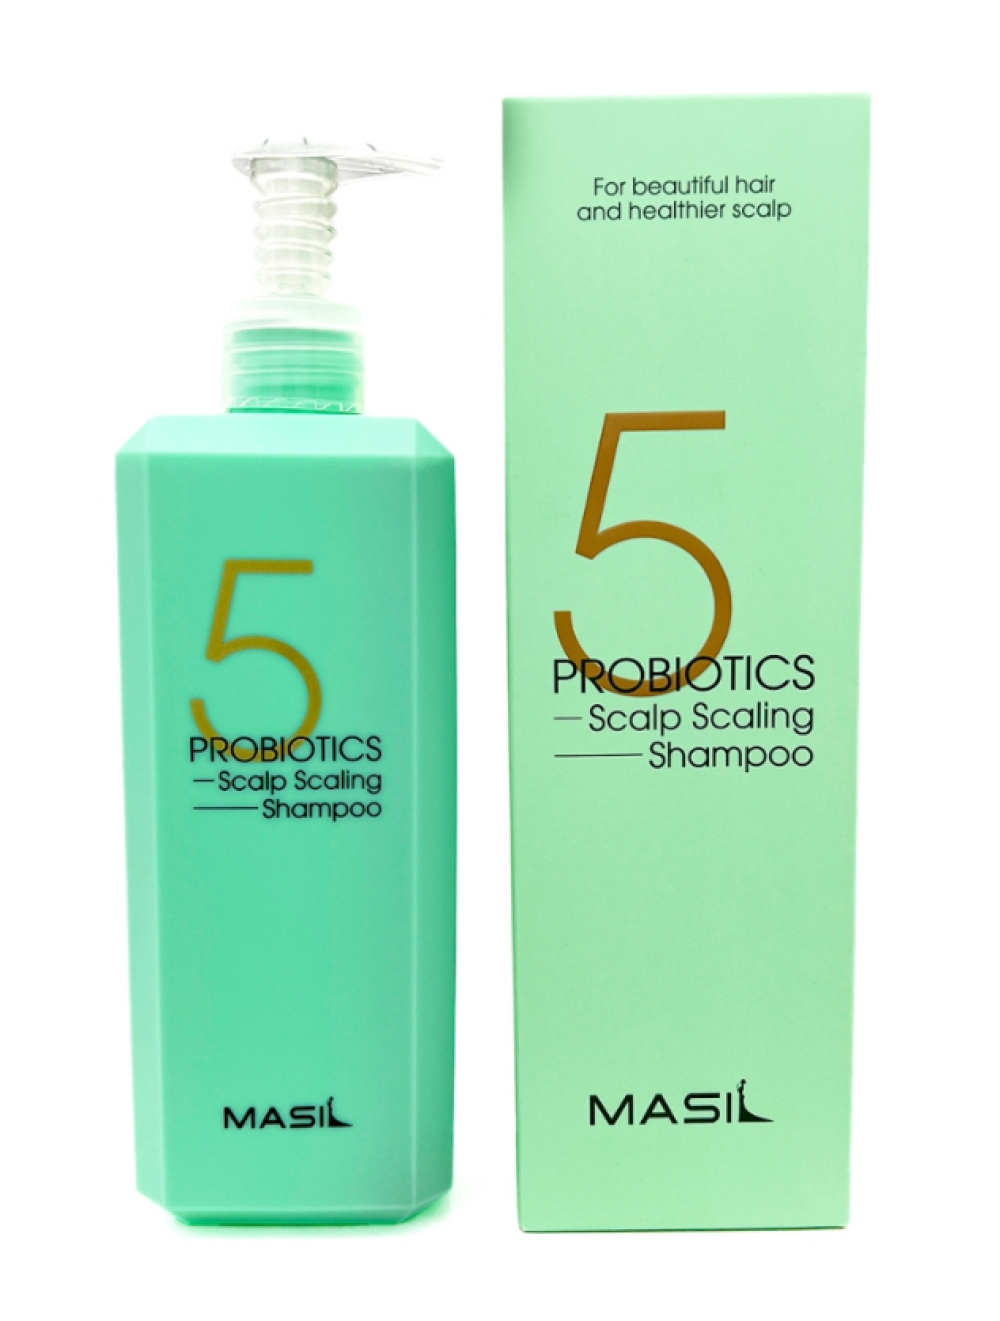 Шампунь глубокоочищающий с 5 видами пробиотиков Masil 5 Probiotics Scalp Scaling Shampoo, 500 мл